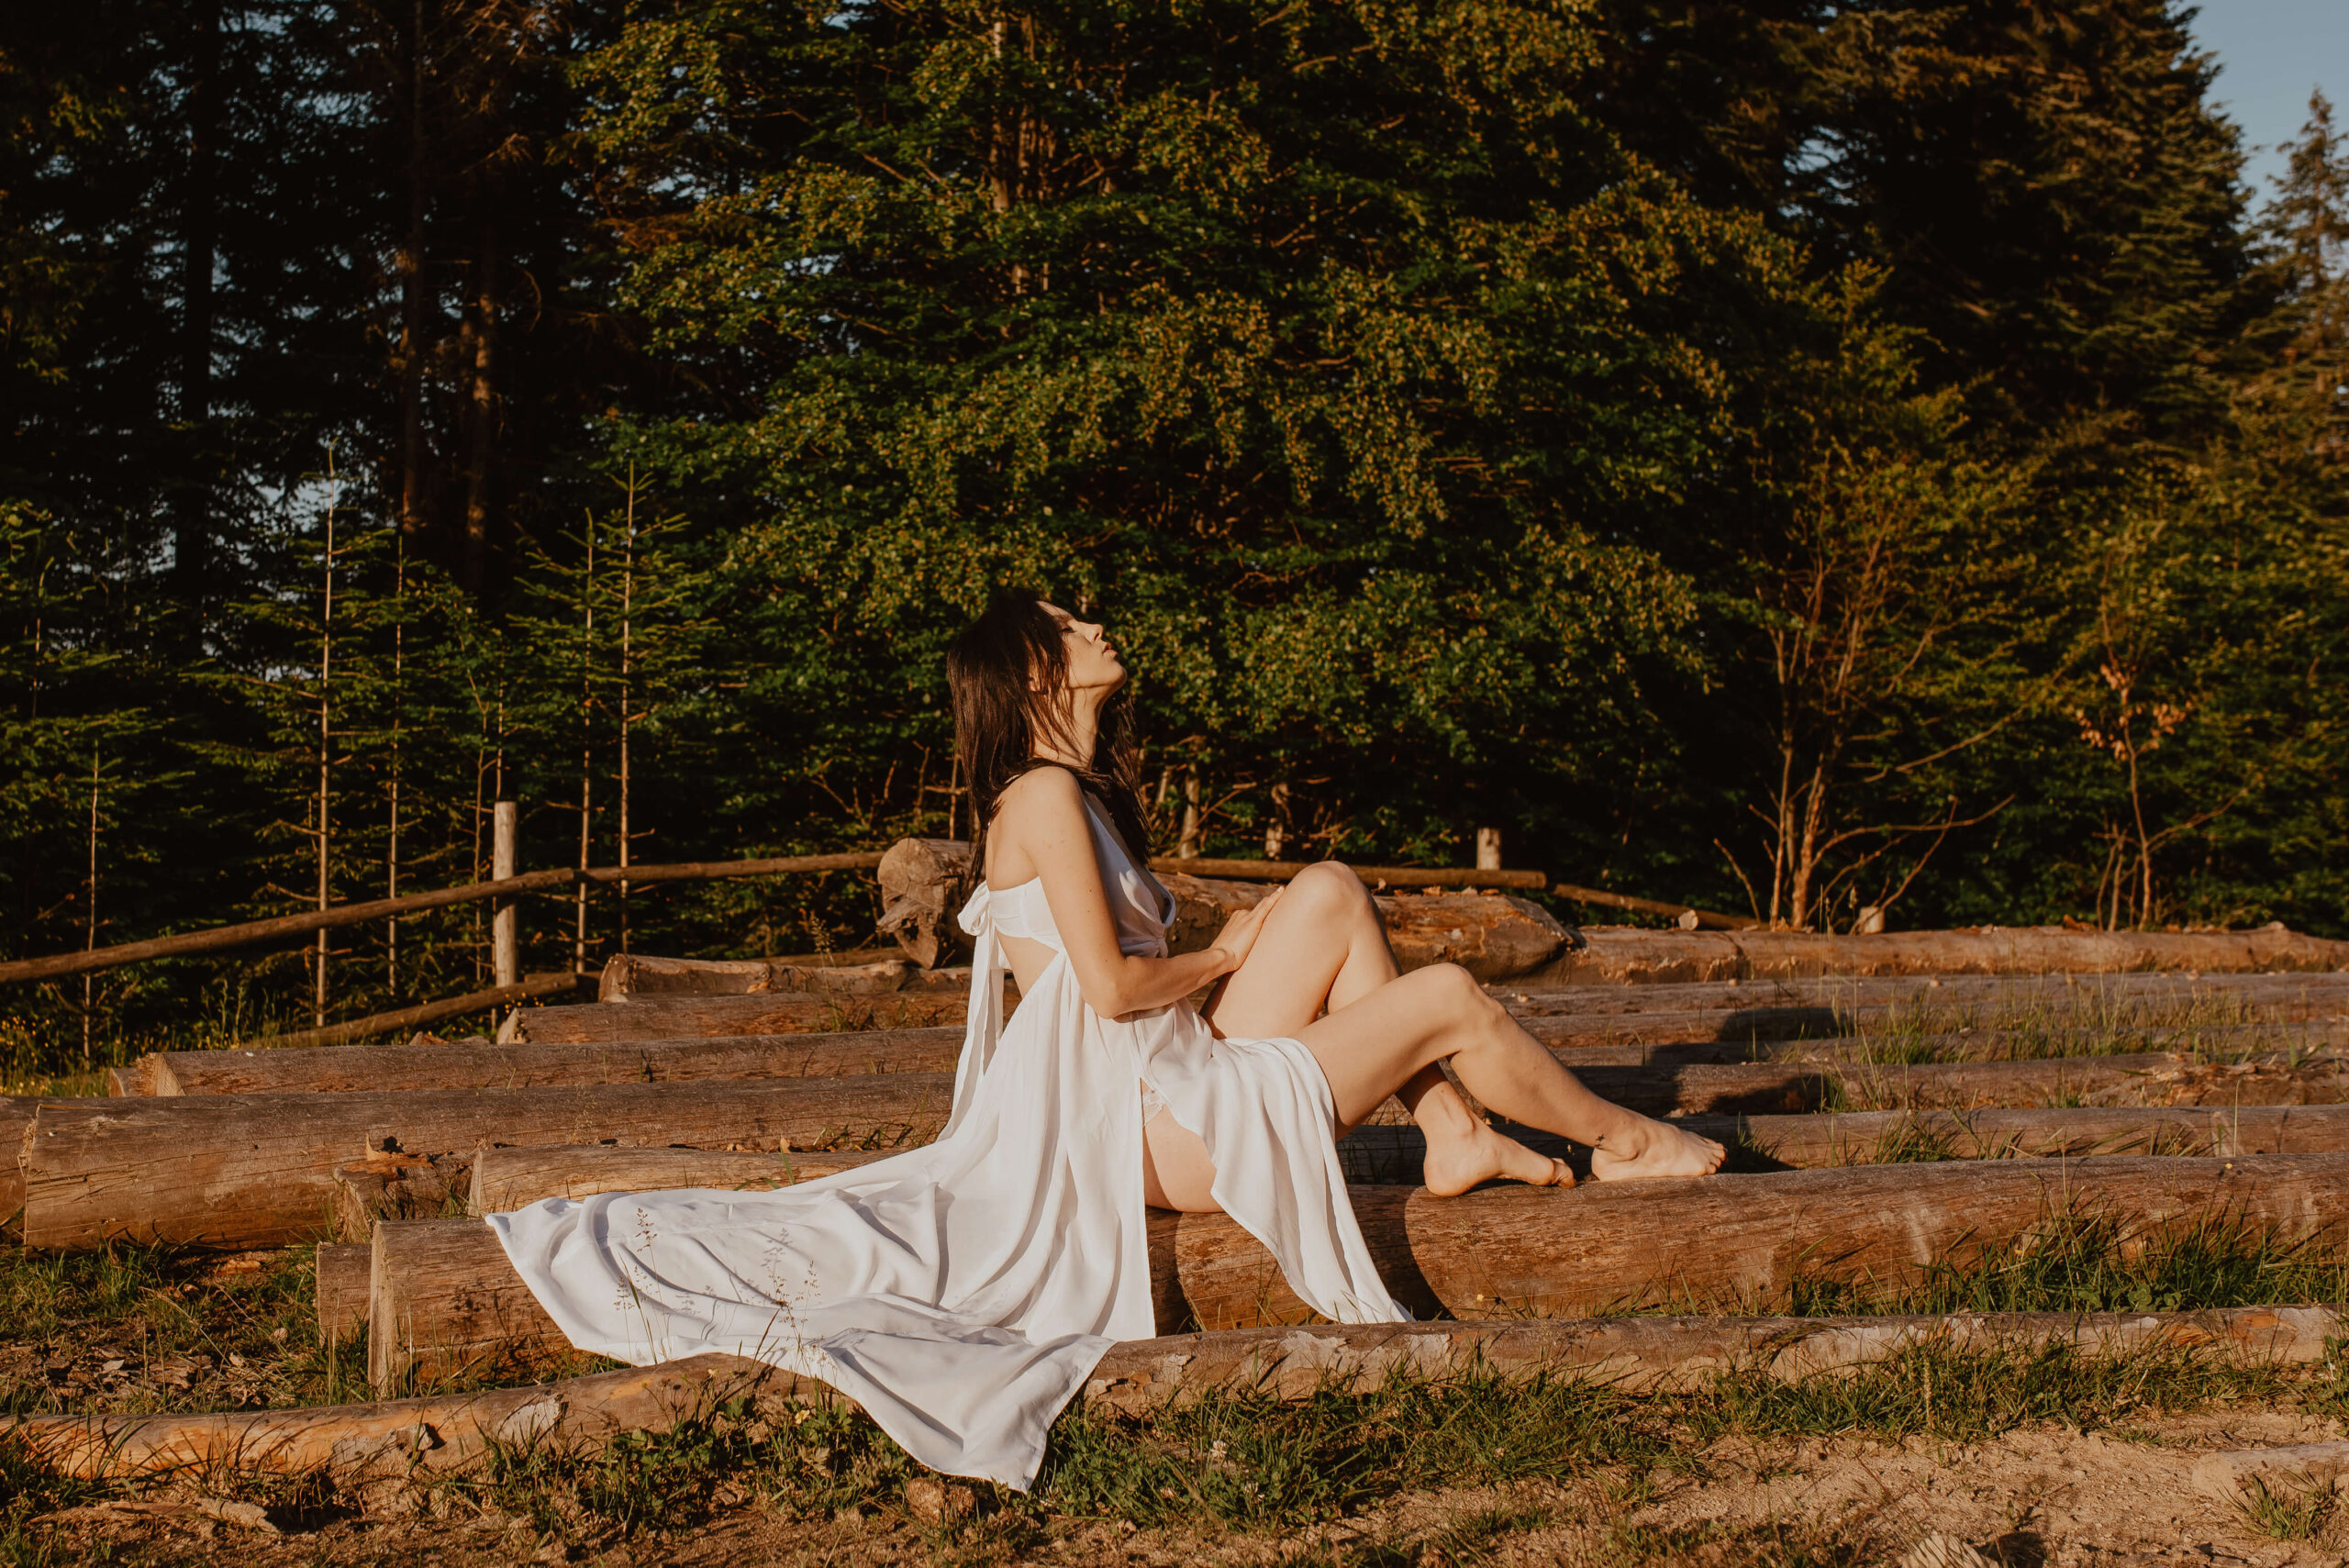 Ein Traum in Weiß! Eine wunderschöne Braut liegt auf Baumstümpfen inmitten einer Bergwiese und genießt den Sonnenaufgang. Ihr leichtes, fließendes Kleid umhüllt sie sanft und die warmen Sonnenstrahlen lassen sie erstrahlen.